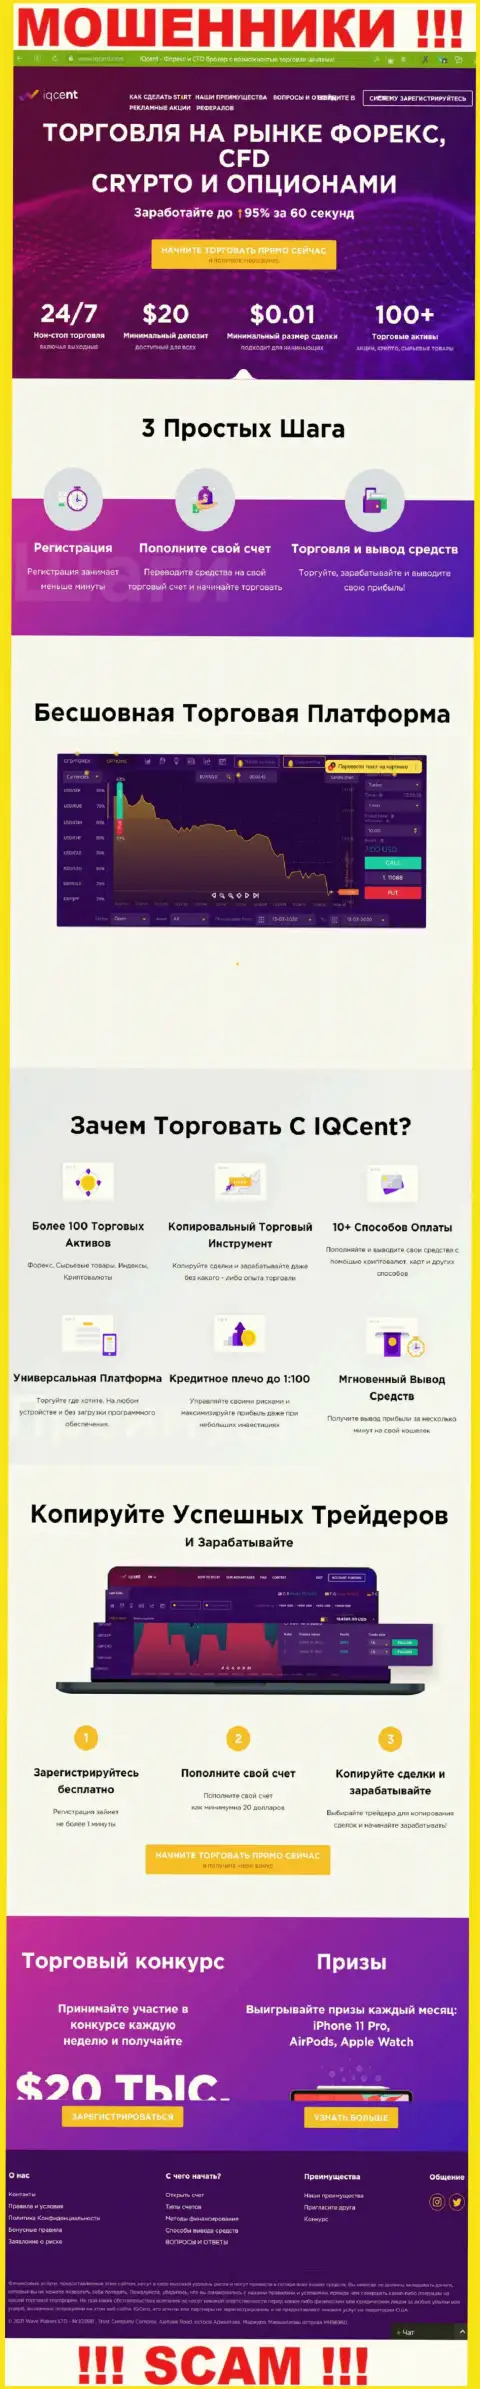 Официальный сервис мошенников IQ Cent, заполненный сведениями для доверчивых людей